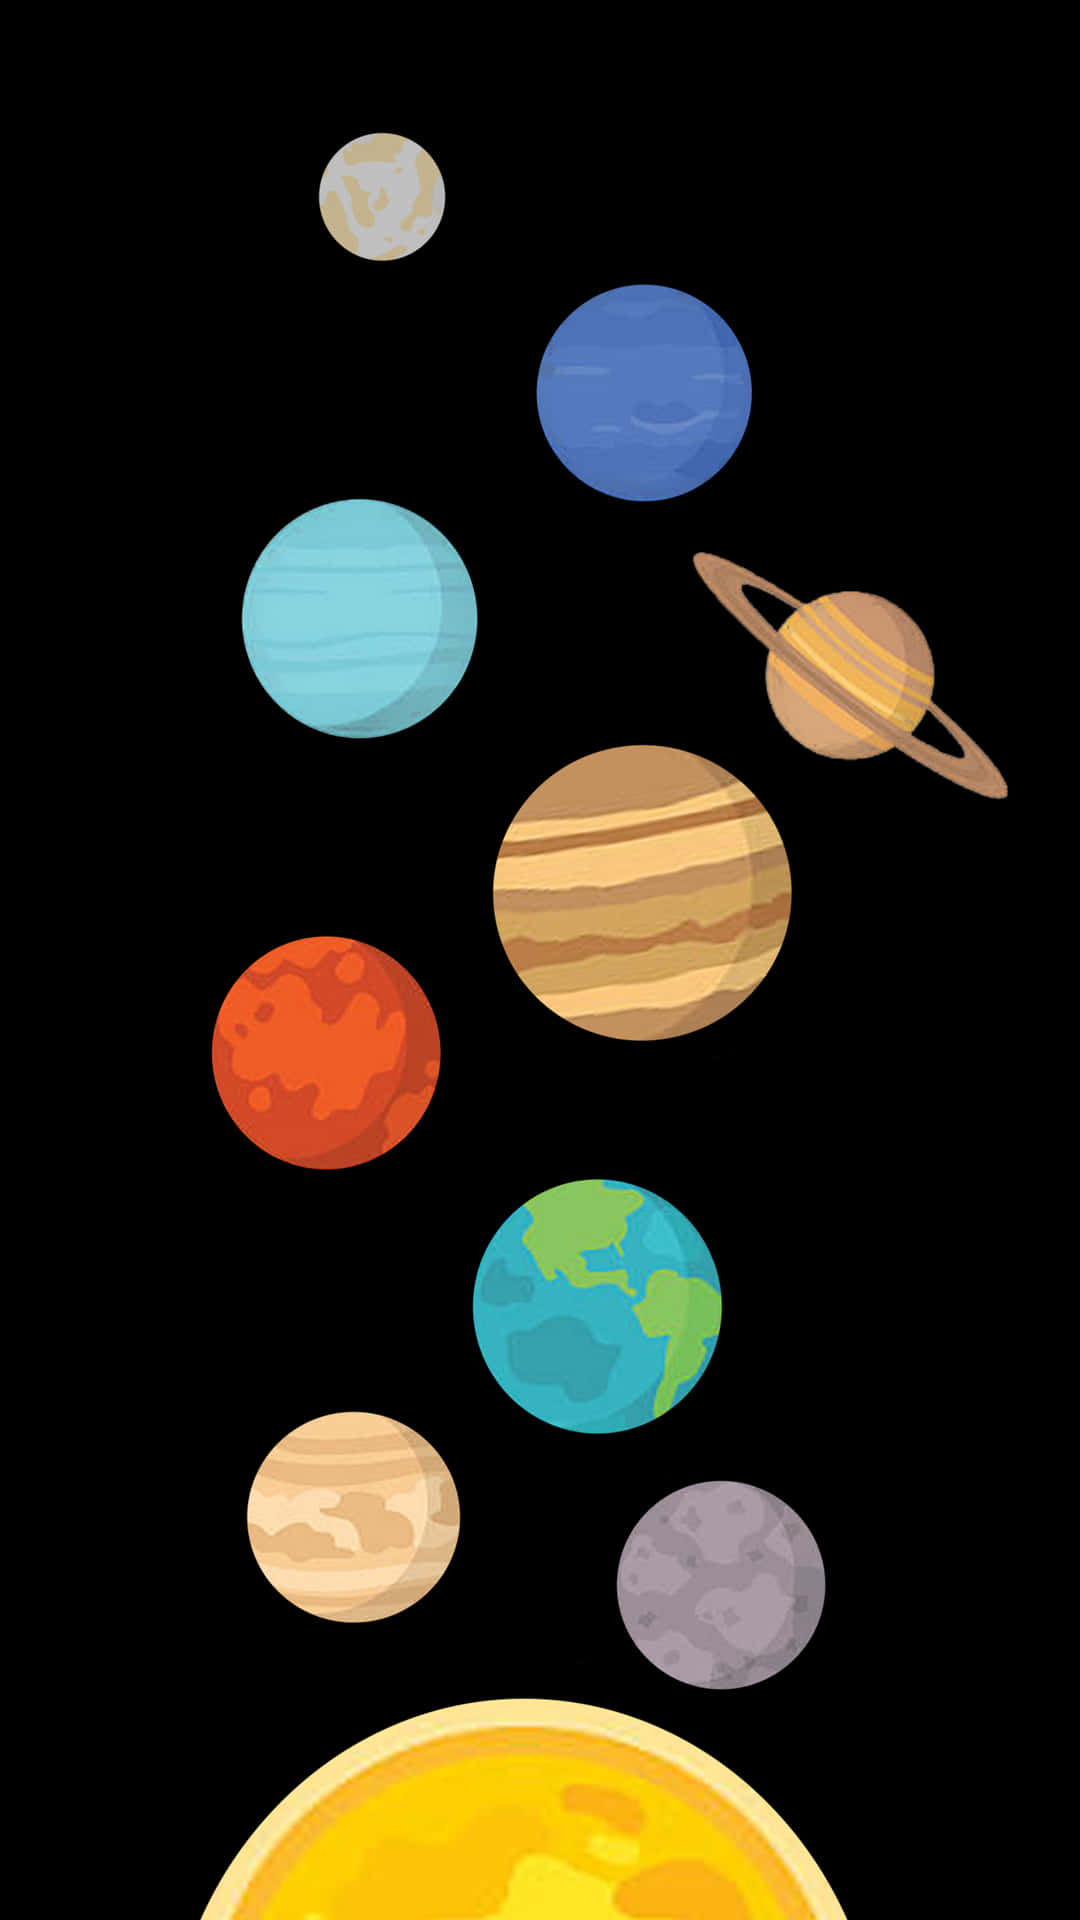 Unaimagen De Dibujos Animados De Los Planetas Volando Alrededor De La Tierra Fondo de pantalla